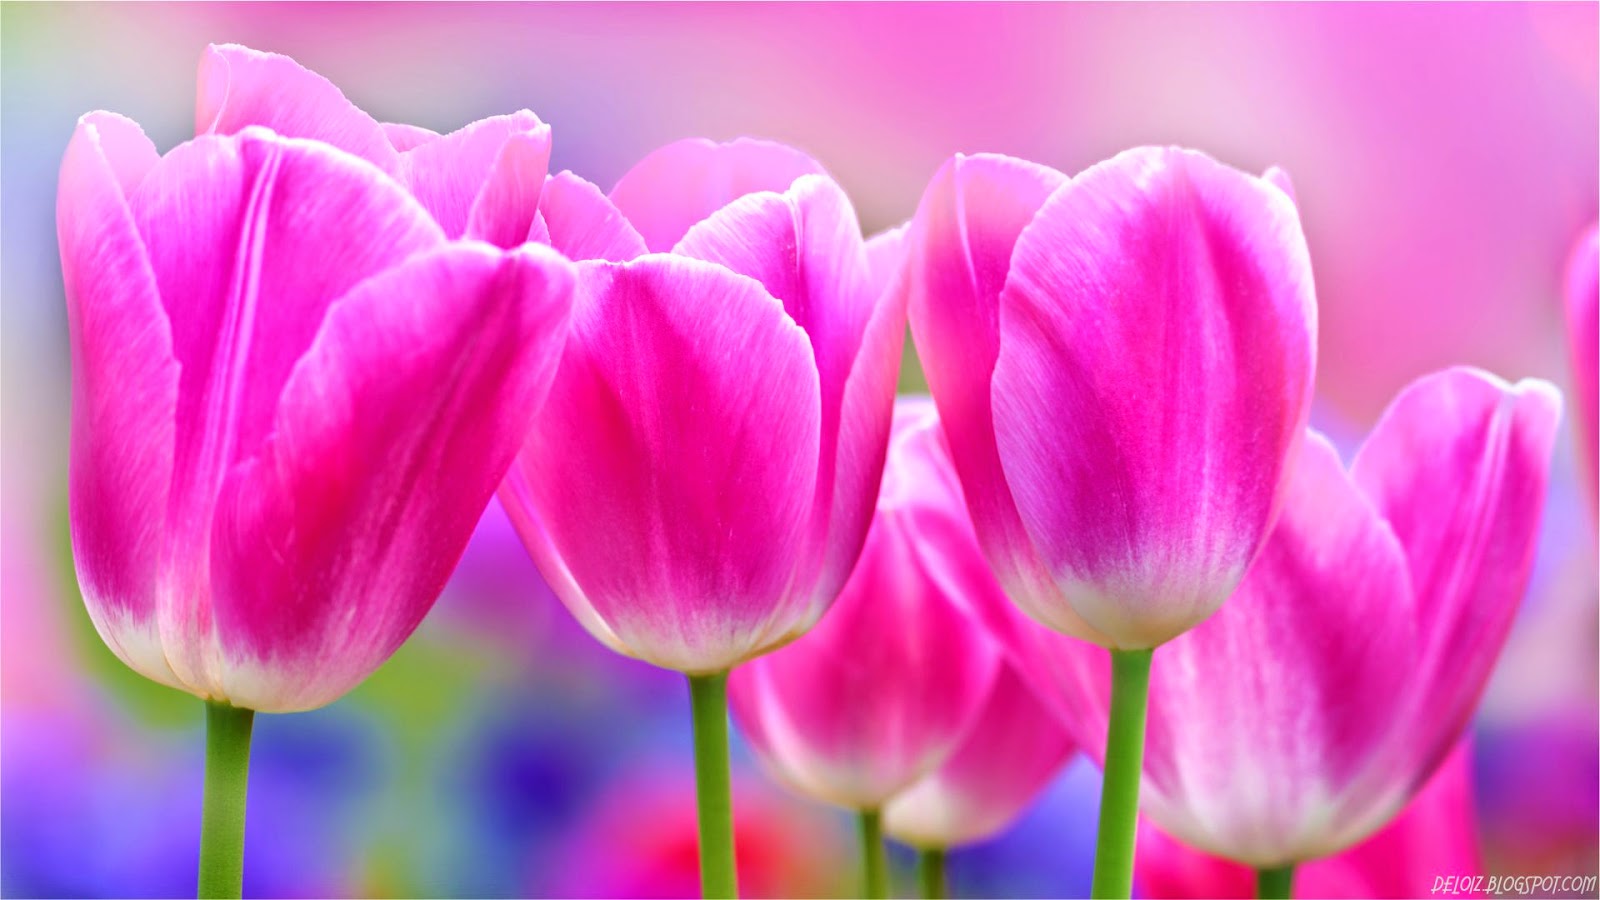 Wallpaper Bunga Tulip Pink Deloiz Wallpaper